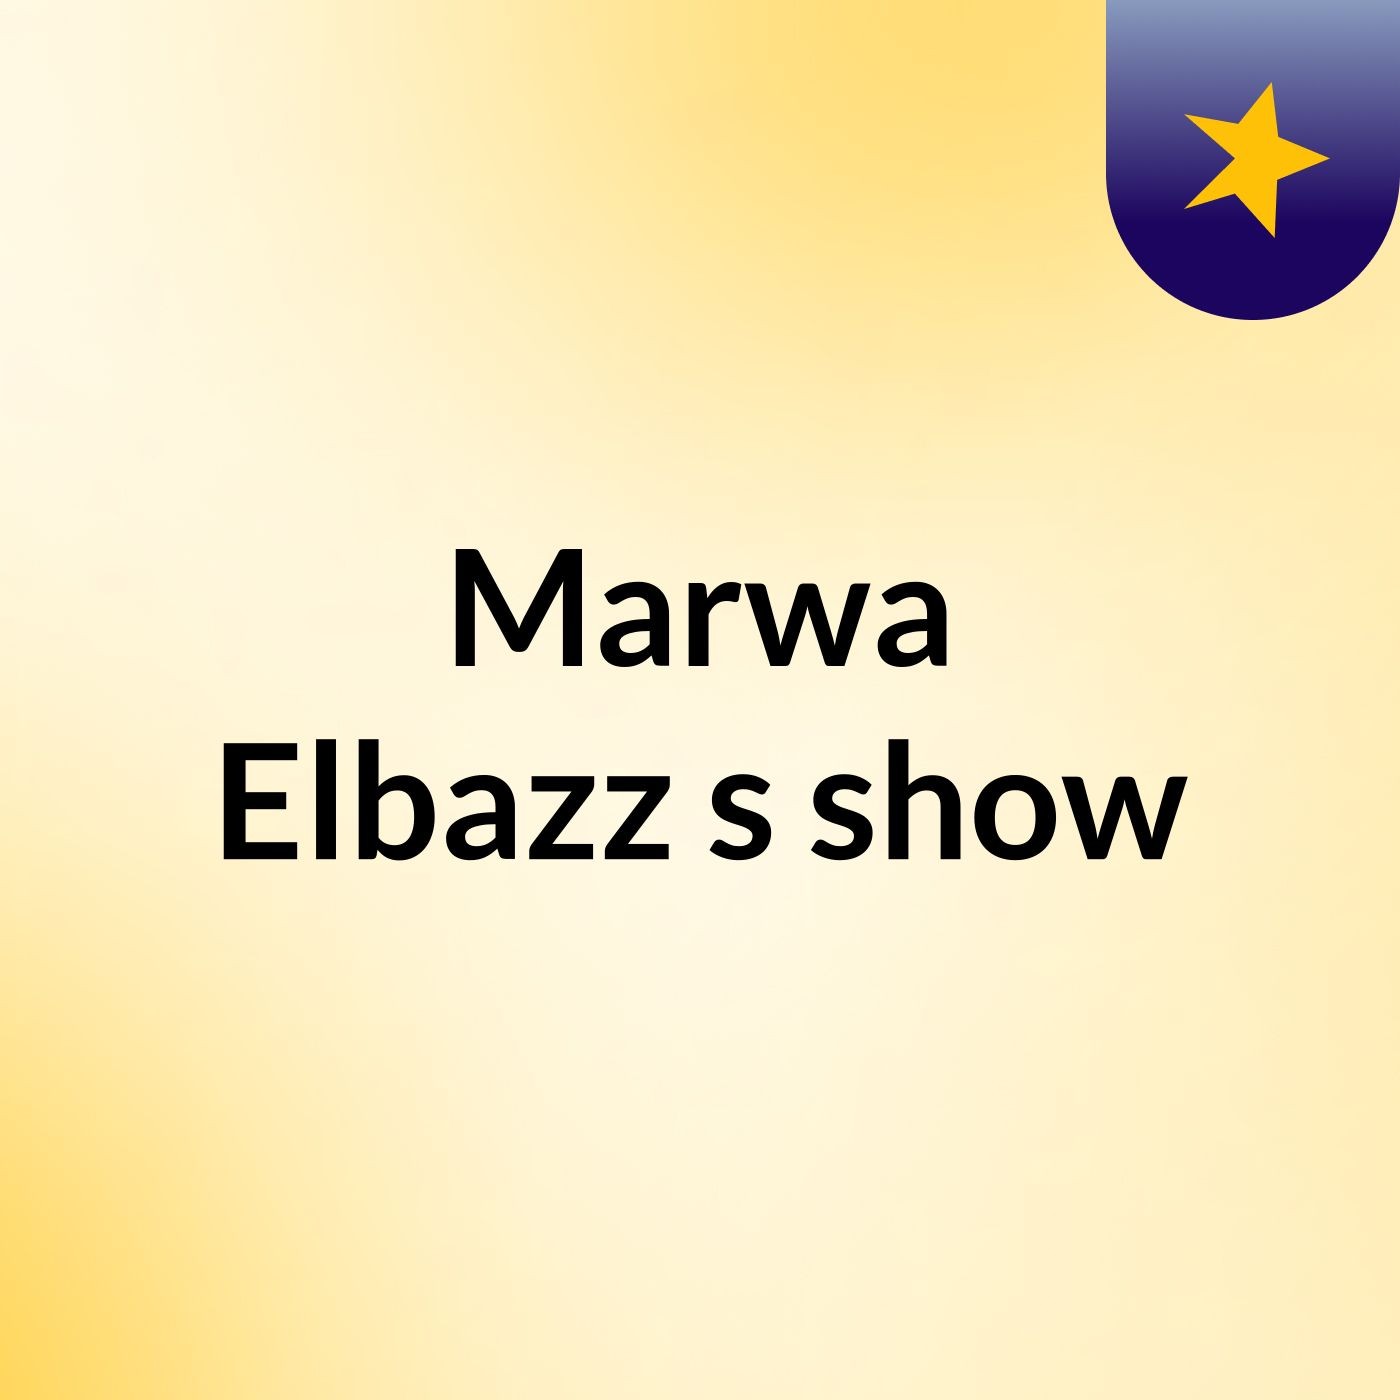 Episode 7 - Marwa Elbazz's show Mosa